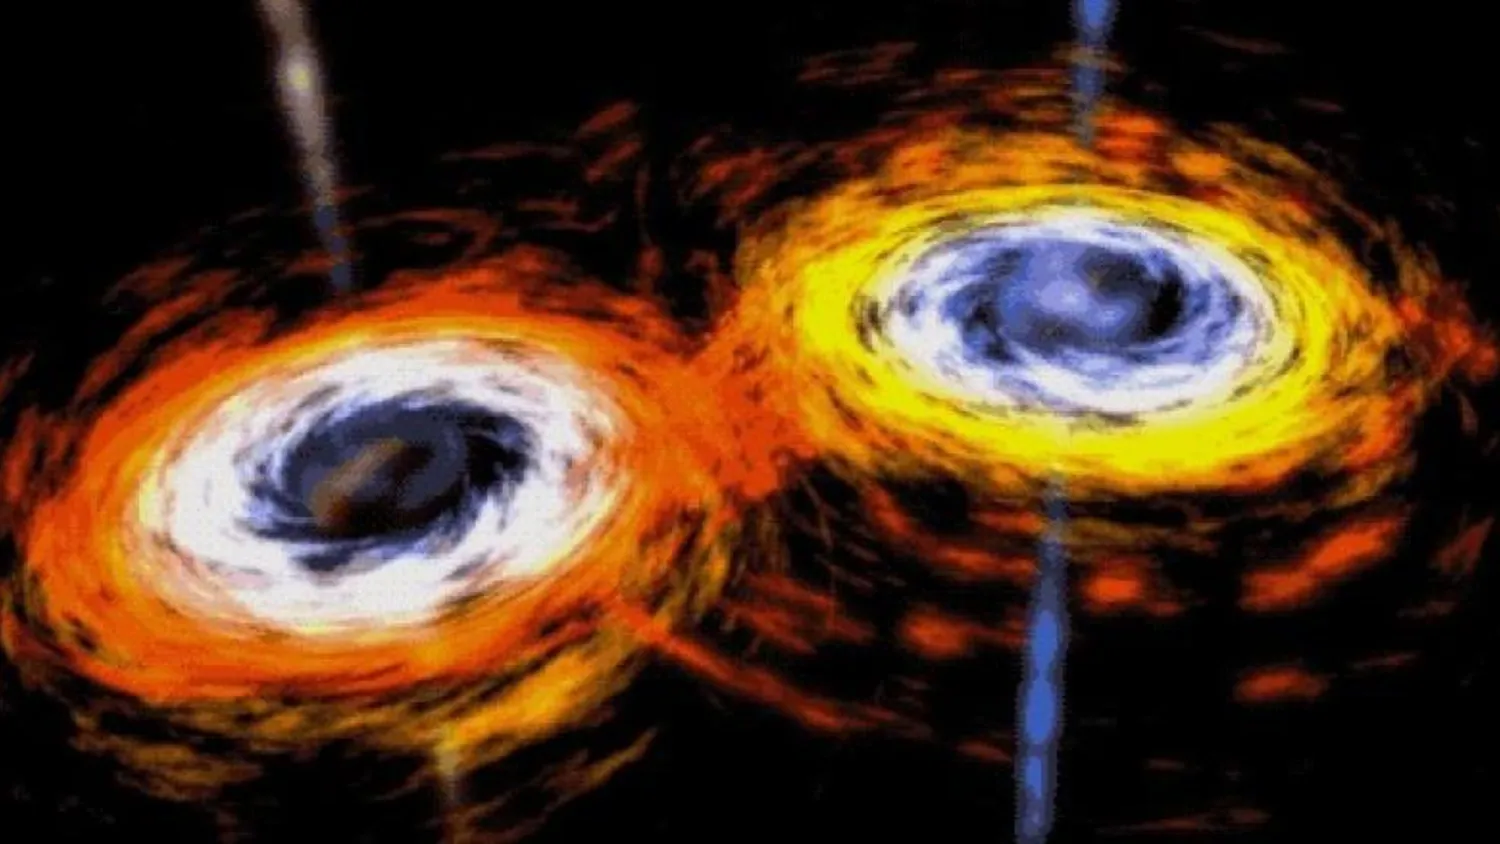 Mehr über den Artikel erfahren Quasare sind „kosmische Wegweiser“, die auf seltene supermassive schwarze Lochpaare hinweisen